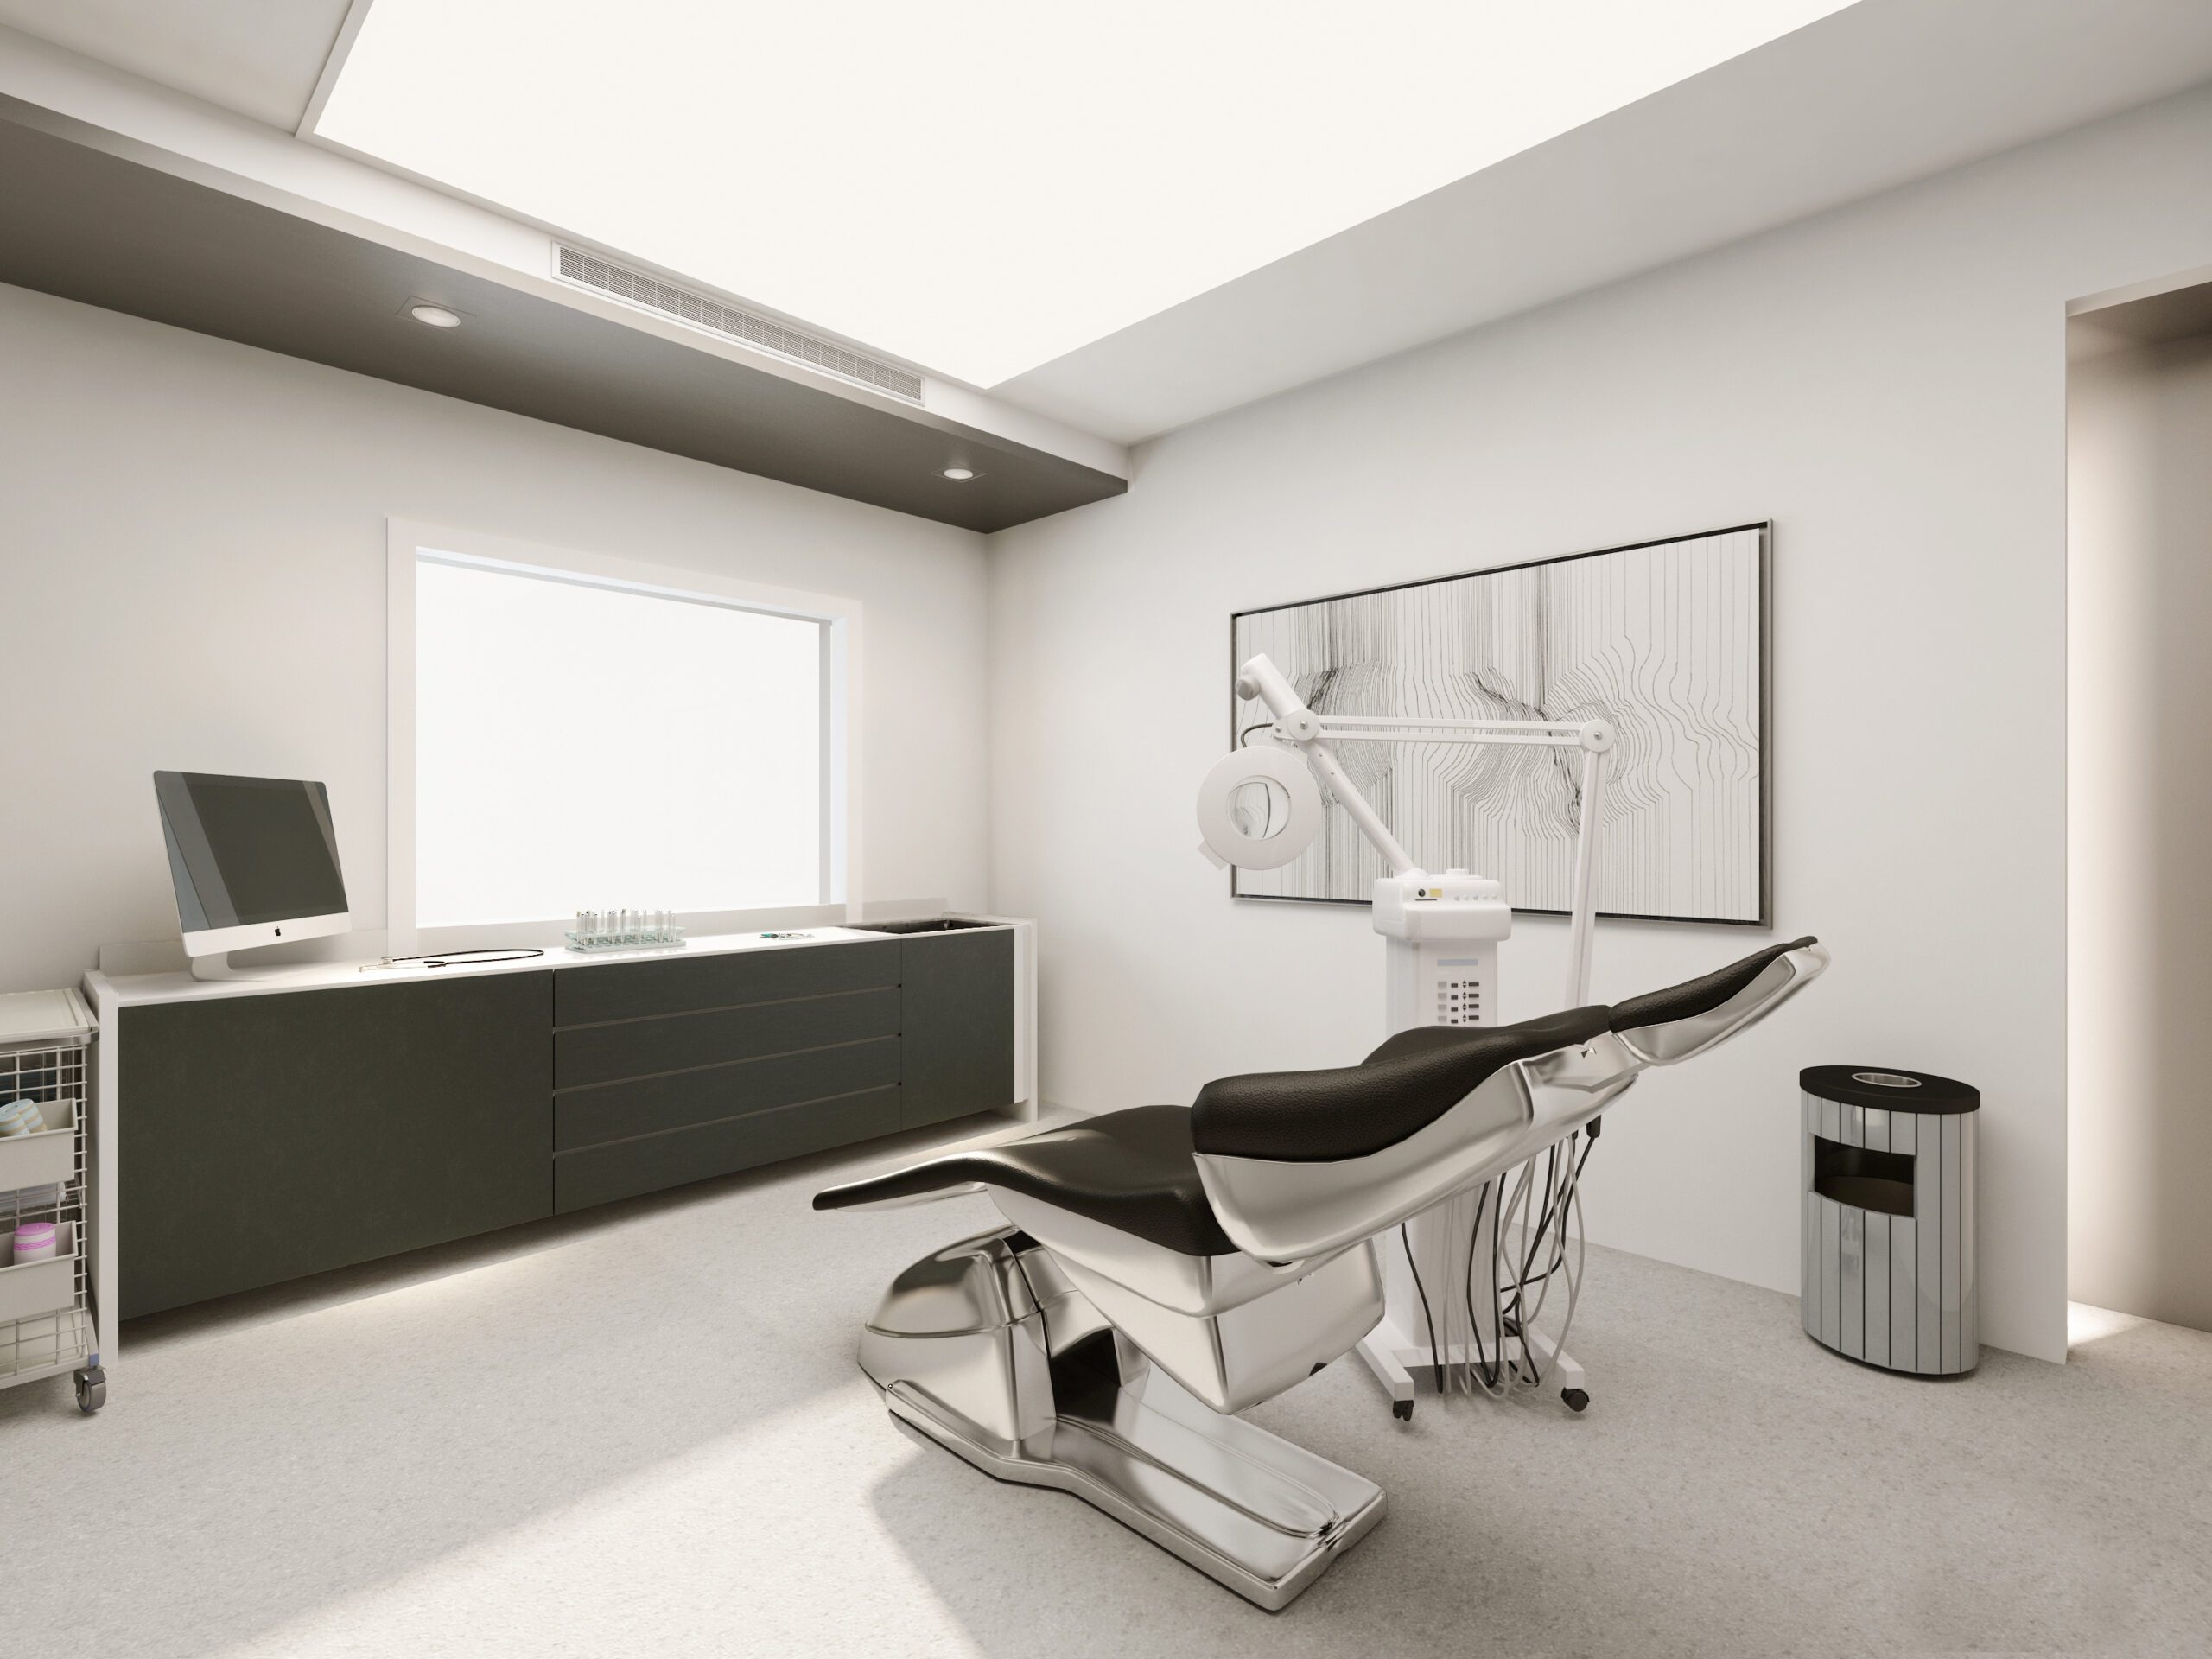 整體空間以簡潔、明亮、乾淨風格為風格，營造出輕鬆、專業的醫事空間底蘊